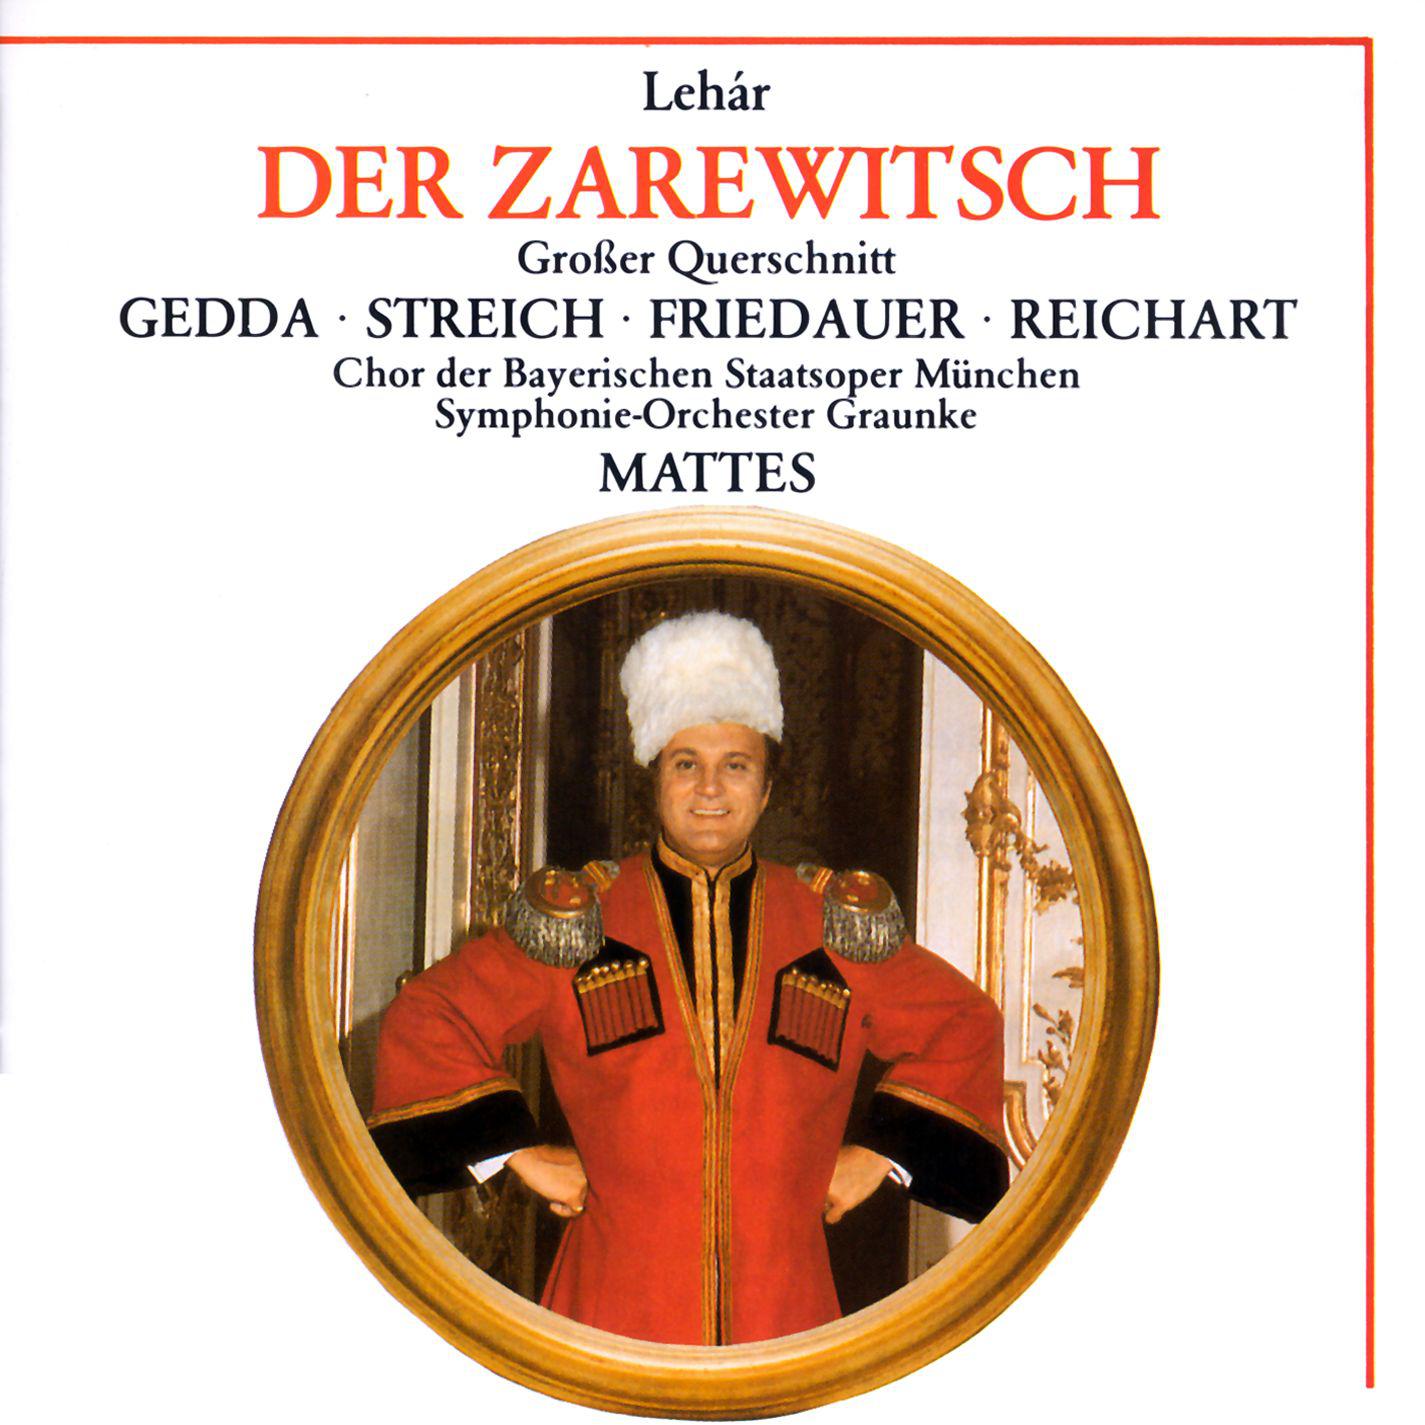 Rita Streich - Der Zarewitsch · Highlights (1988 Remastered Version), Erster Akt:Introduktion - Es steht ein Soldat am Wolgastrand (Chor)